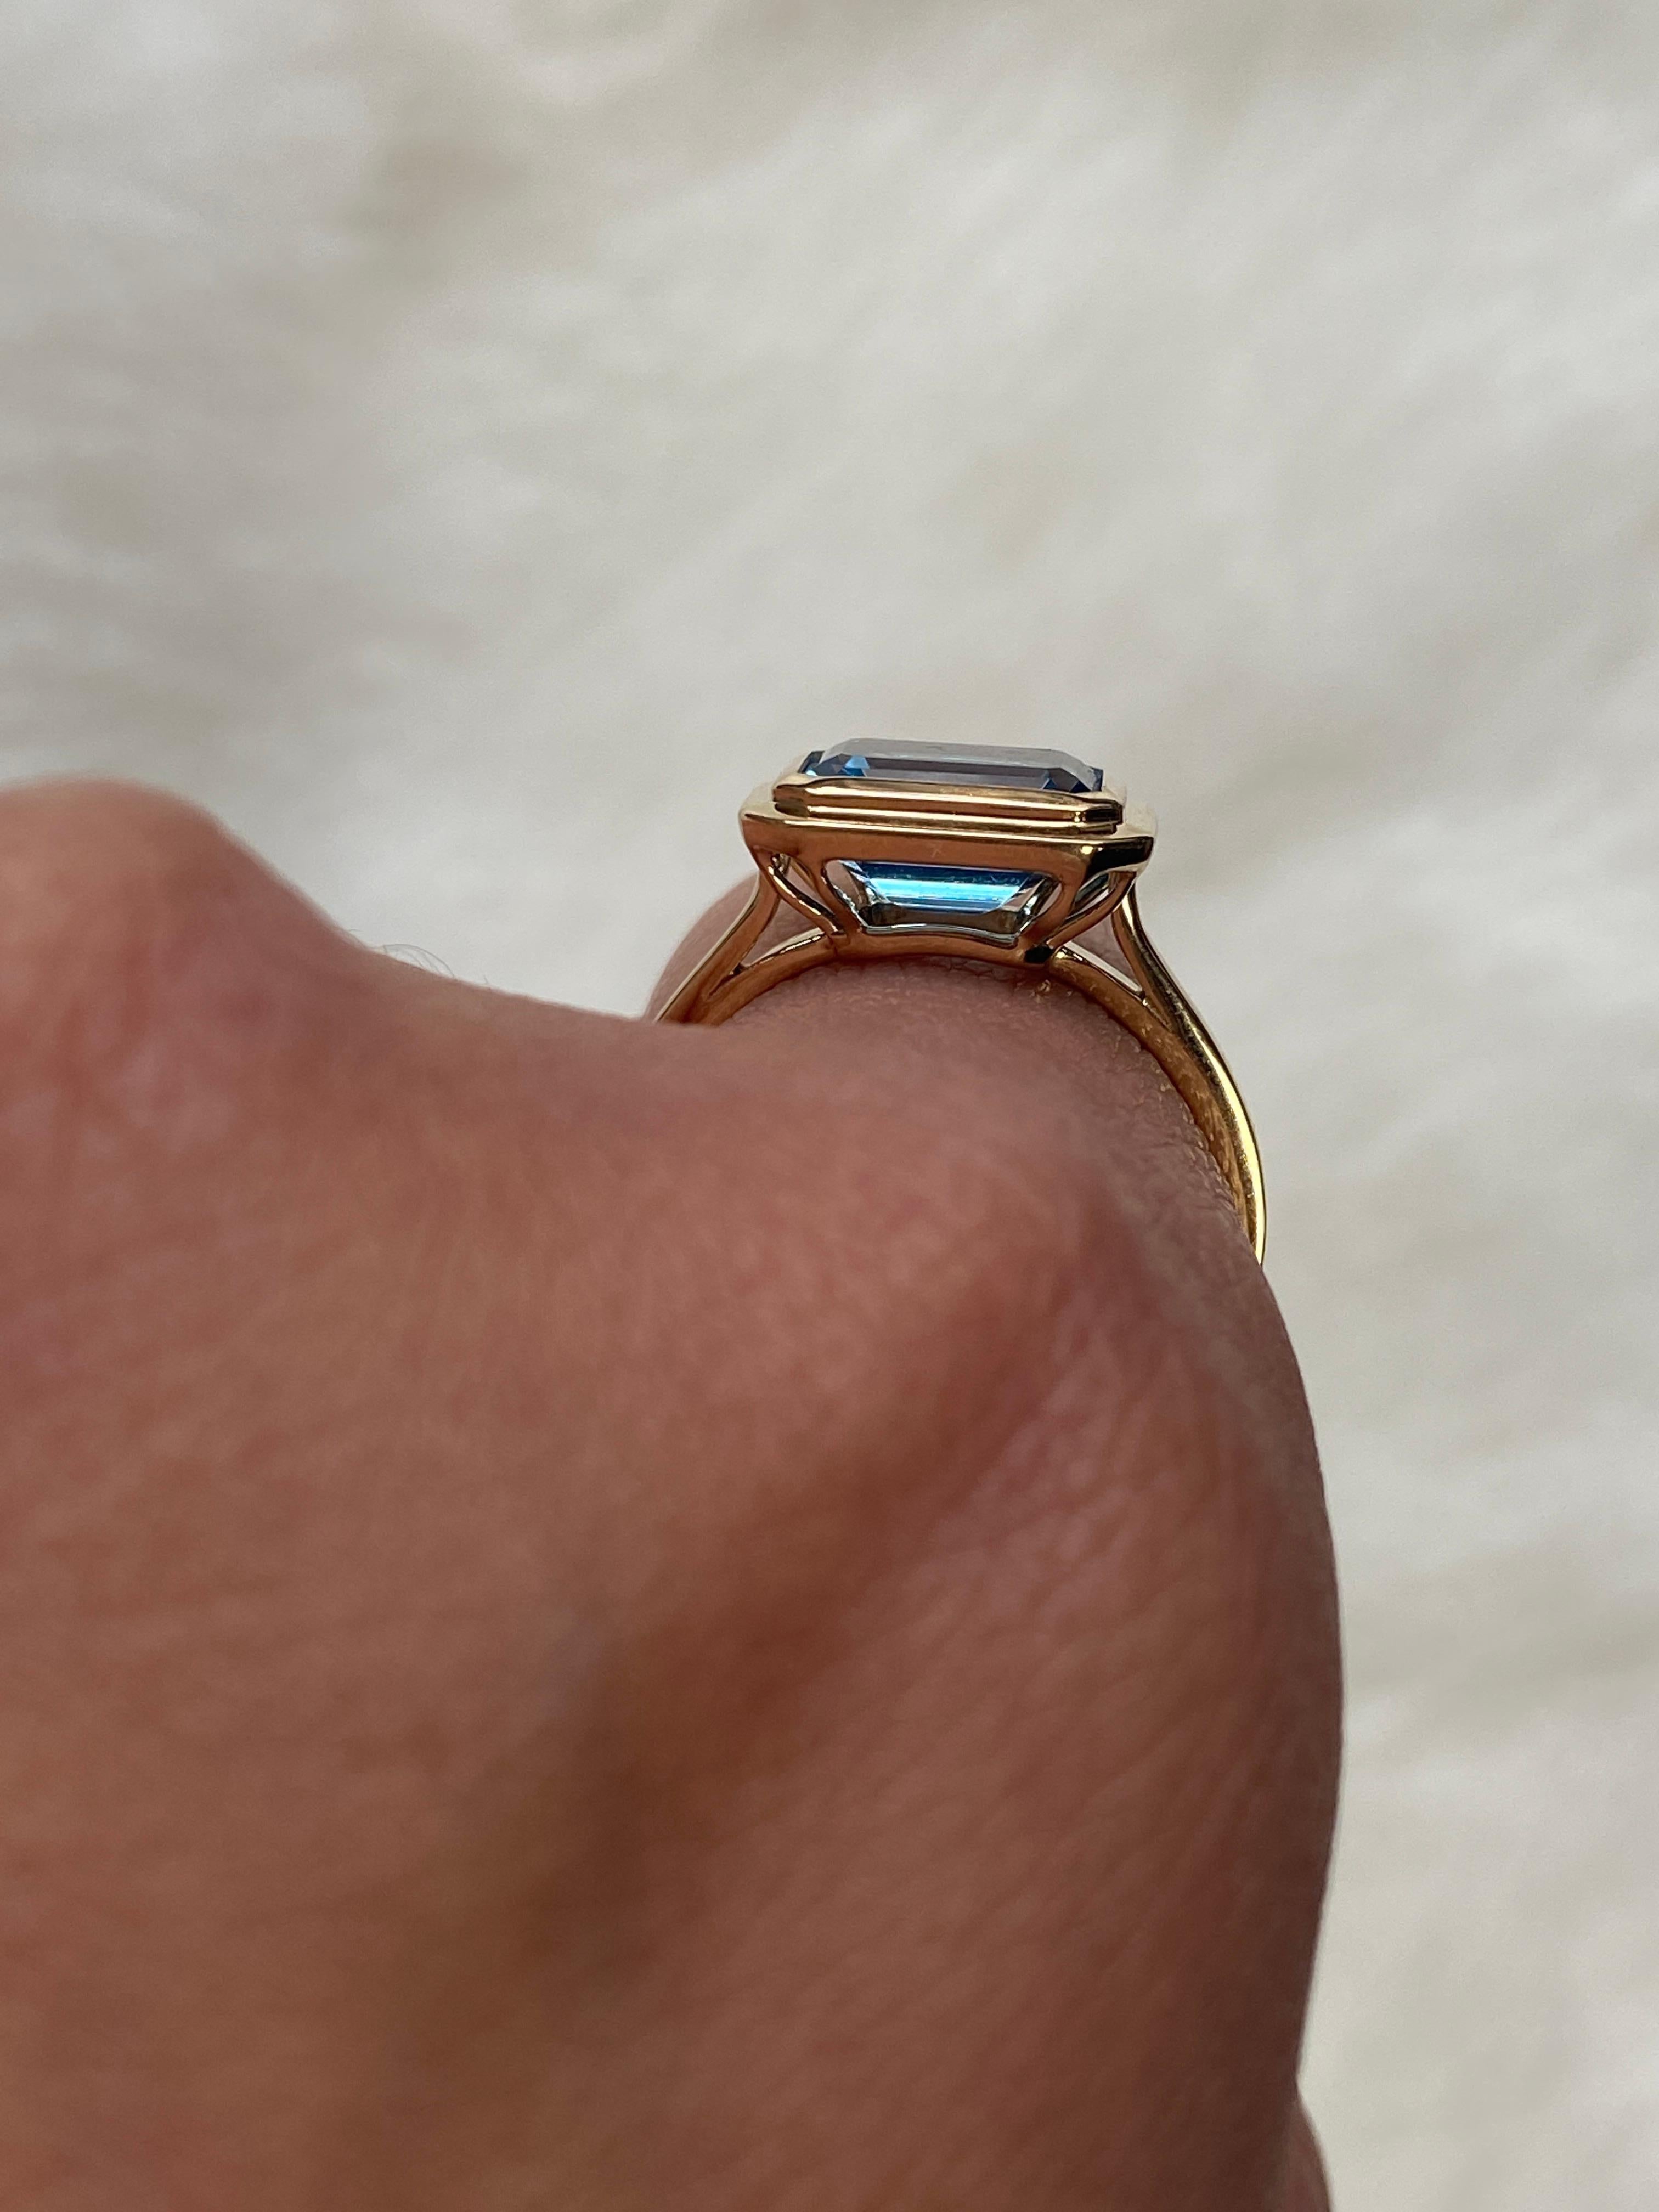 Dieser Blautopas-Ring mit Smaragdschliff und Lünette aus 18 Karat Gelbgold ist ein elegantes Stück aus der 'Manhattan' Collection. Er verfügt über einen atemberaubenden Blautopas im Smaragdschliff, der in eine Lünette aus 18 Karat Gelbgold gefasst